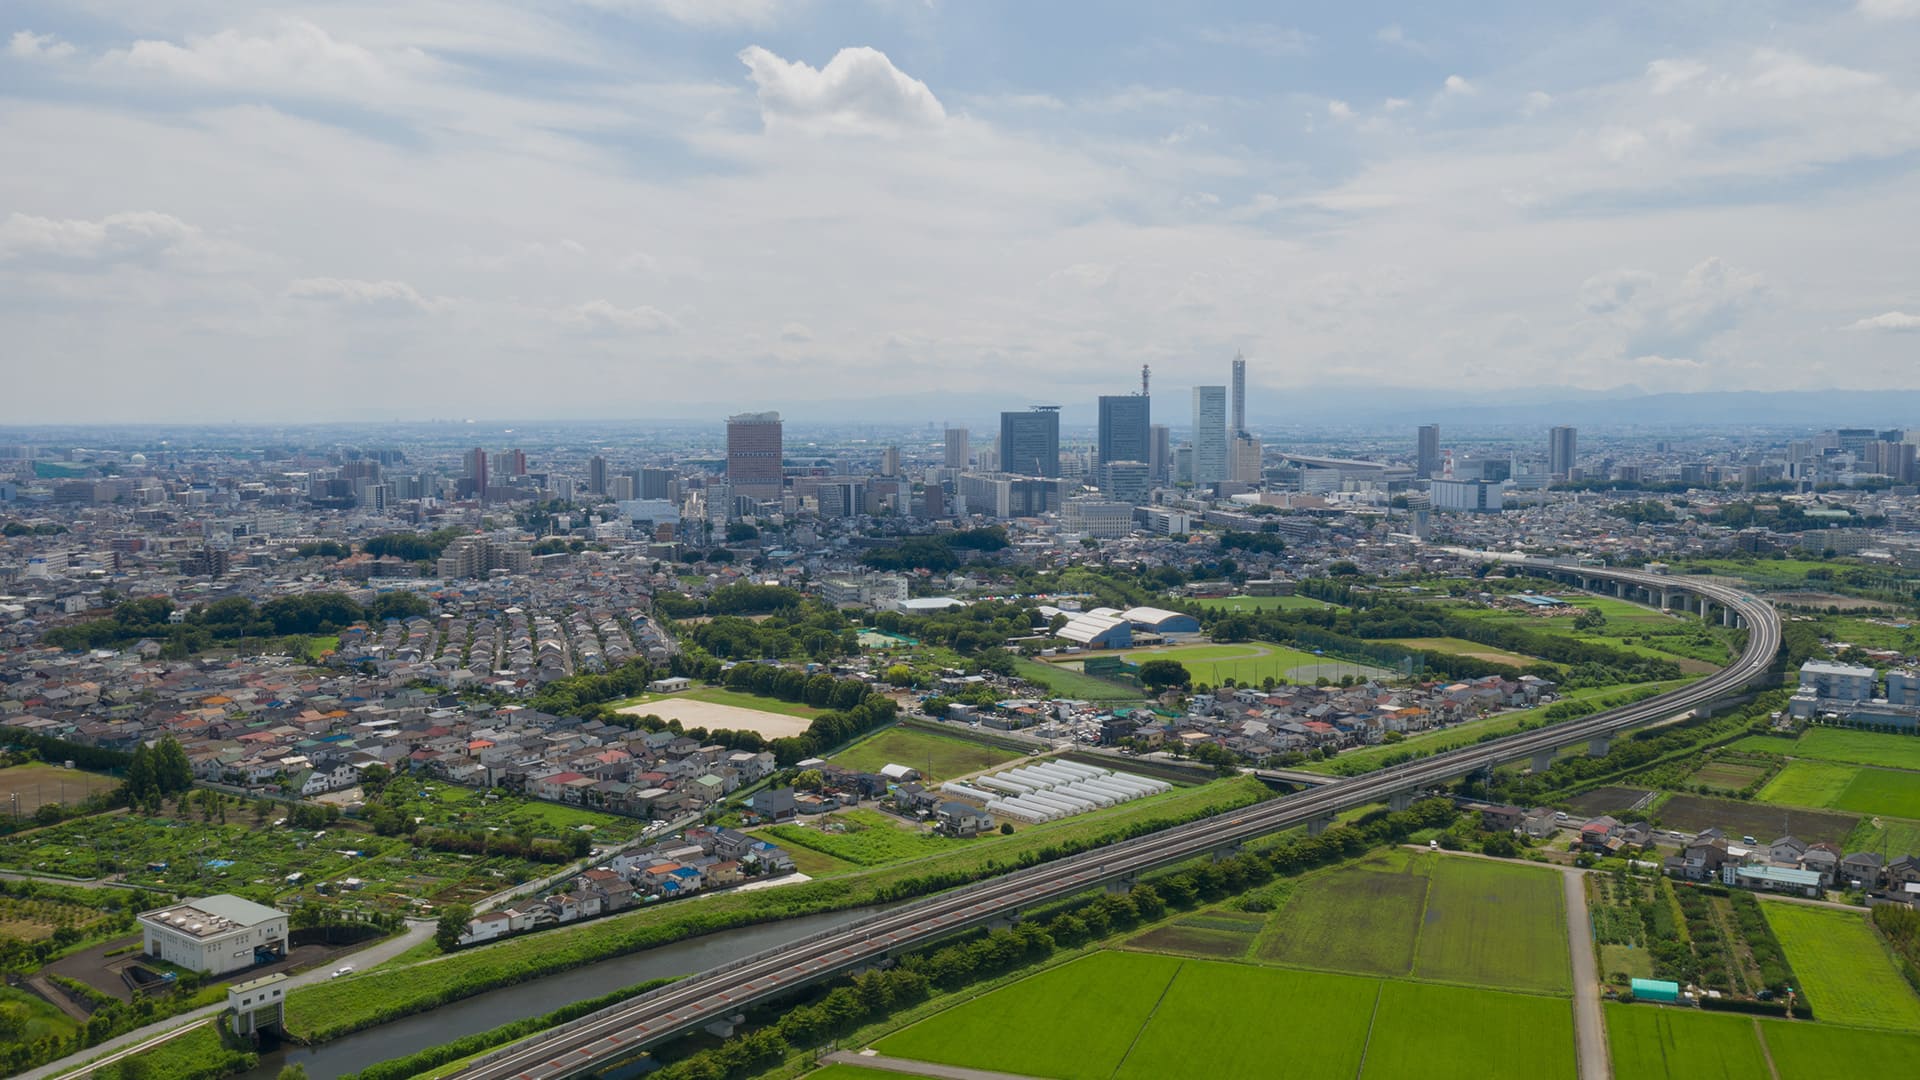 ”さいたま市内の中小企業DX化支援の取り組み”のイメージ画像 / Image of ”DX for SMEs in Saitama”